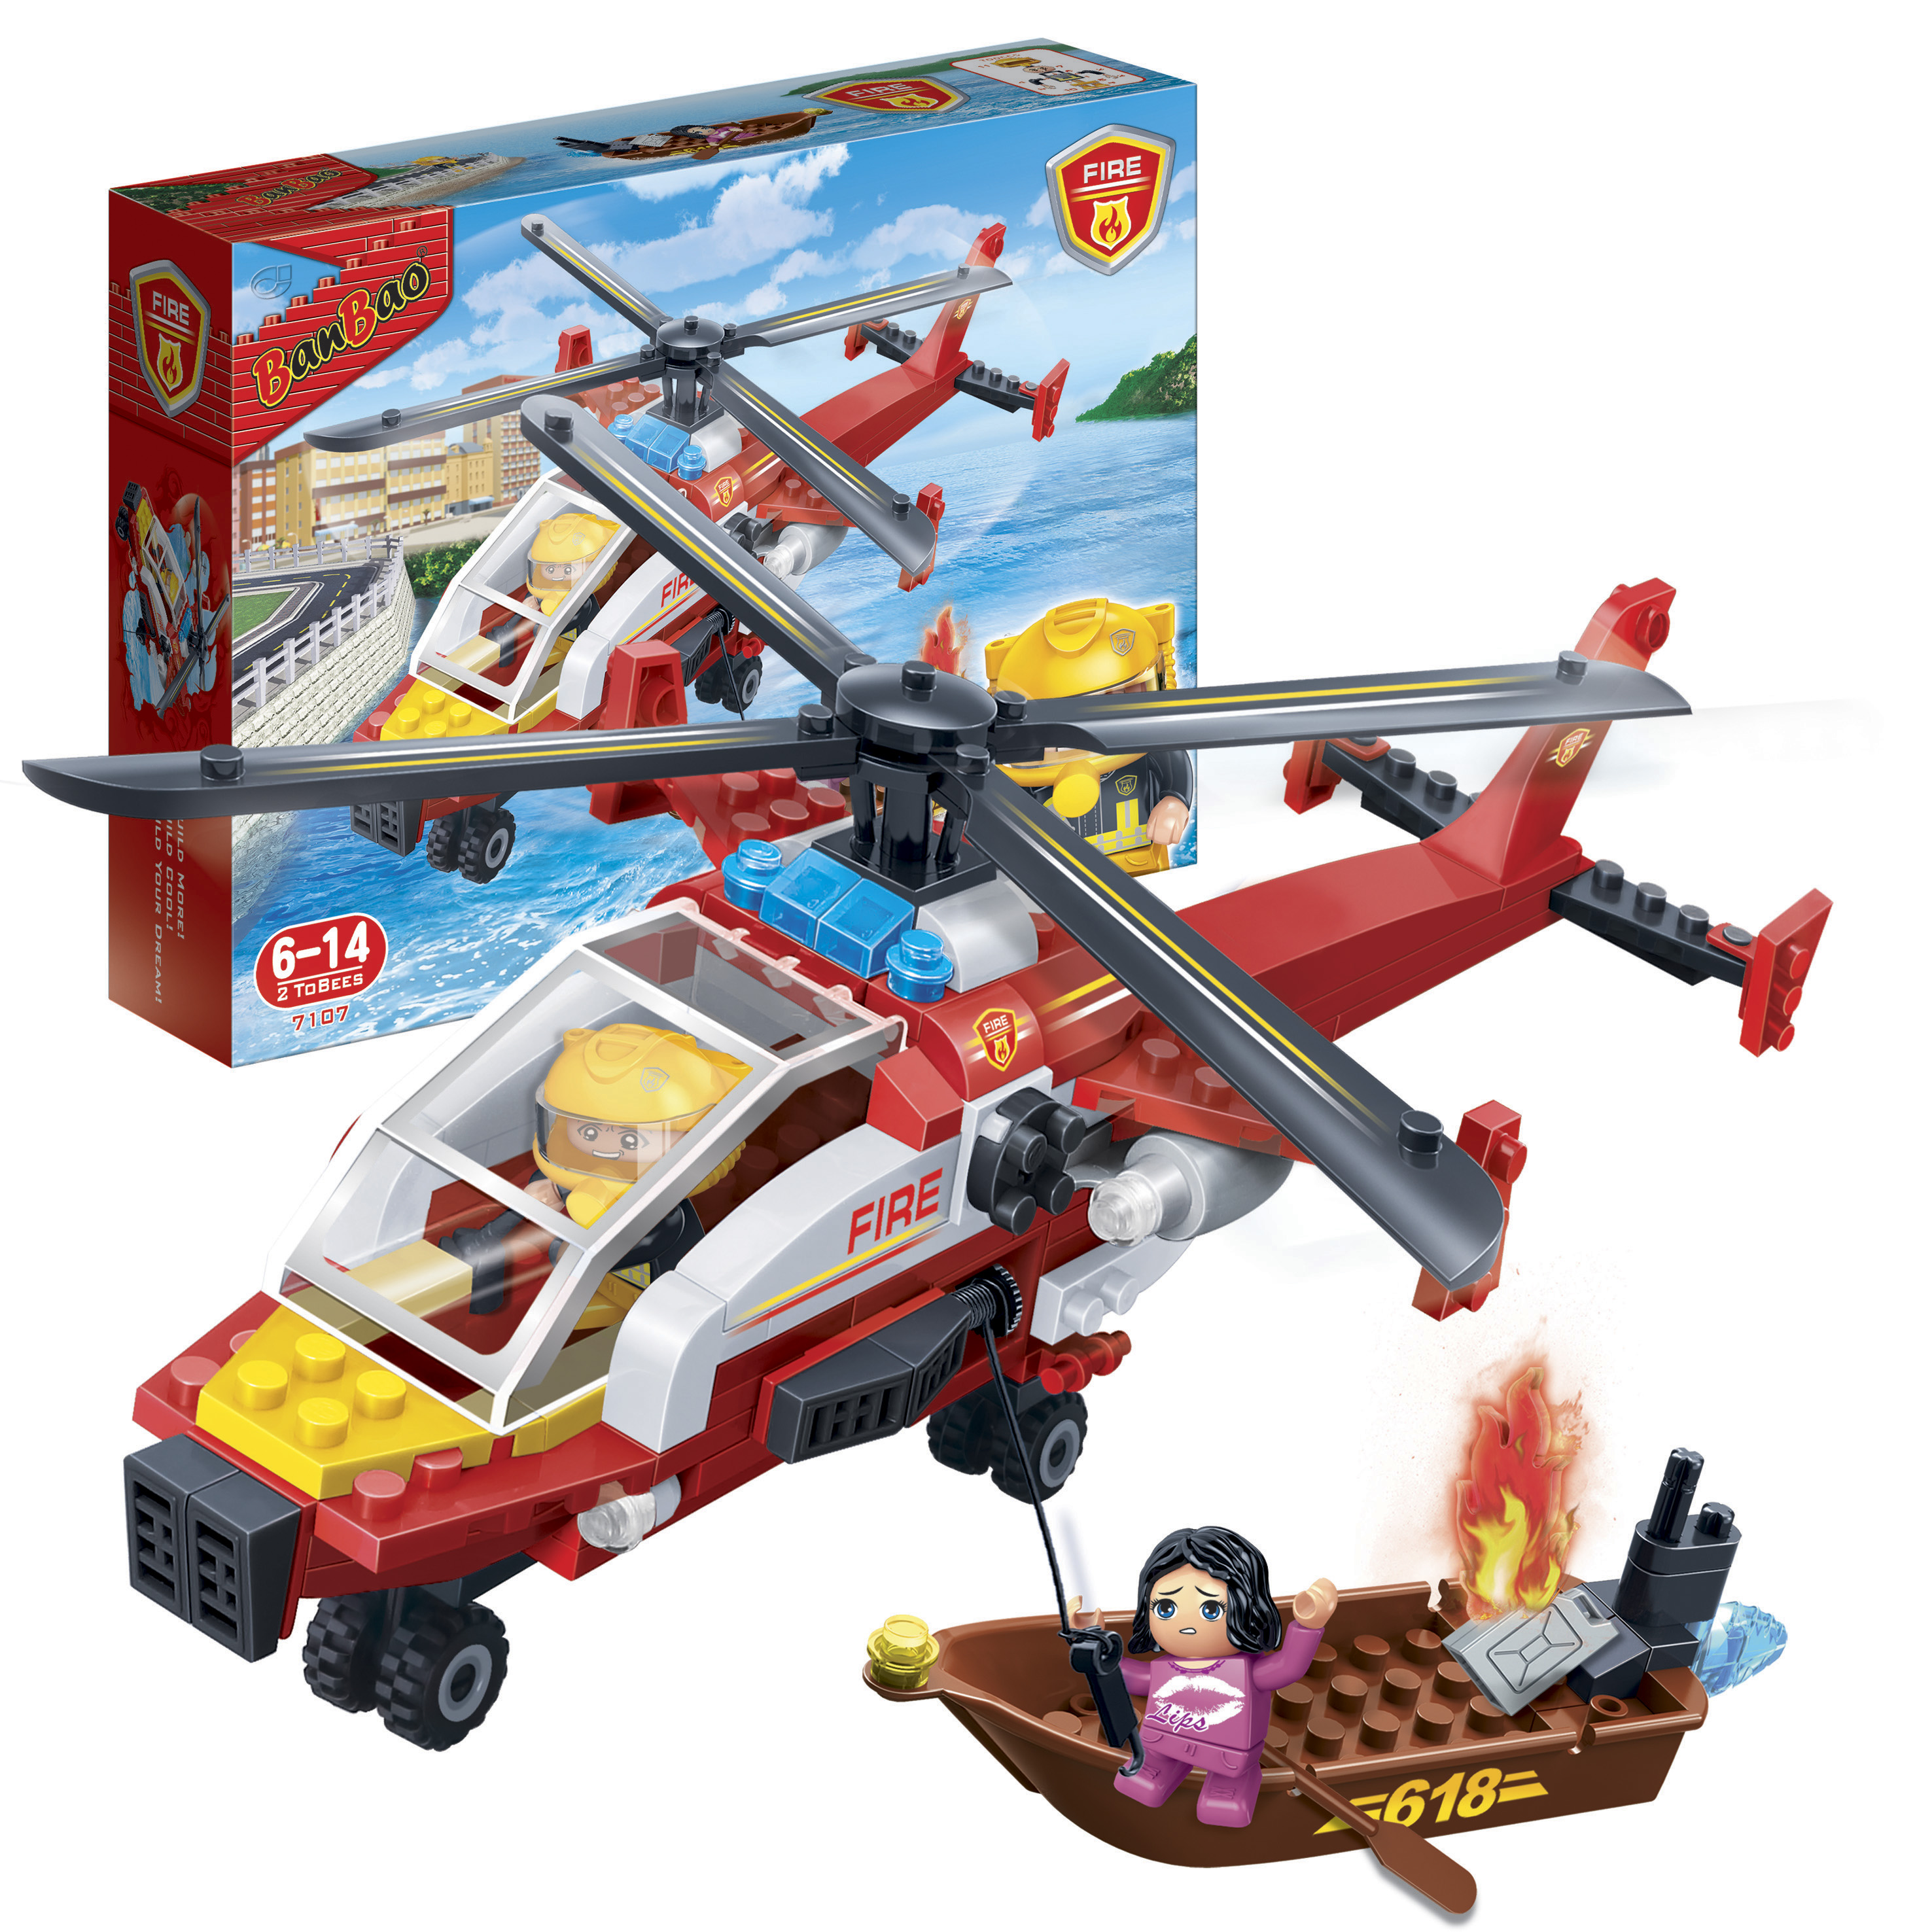 Kinder Geschenk Konstruktion Spielzeug Bausteine Baukästen Feuerwehr Hubschrauber 7107